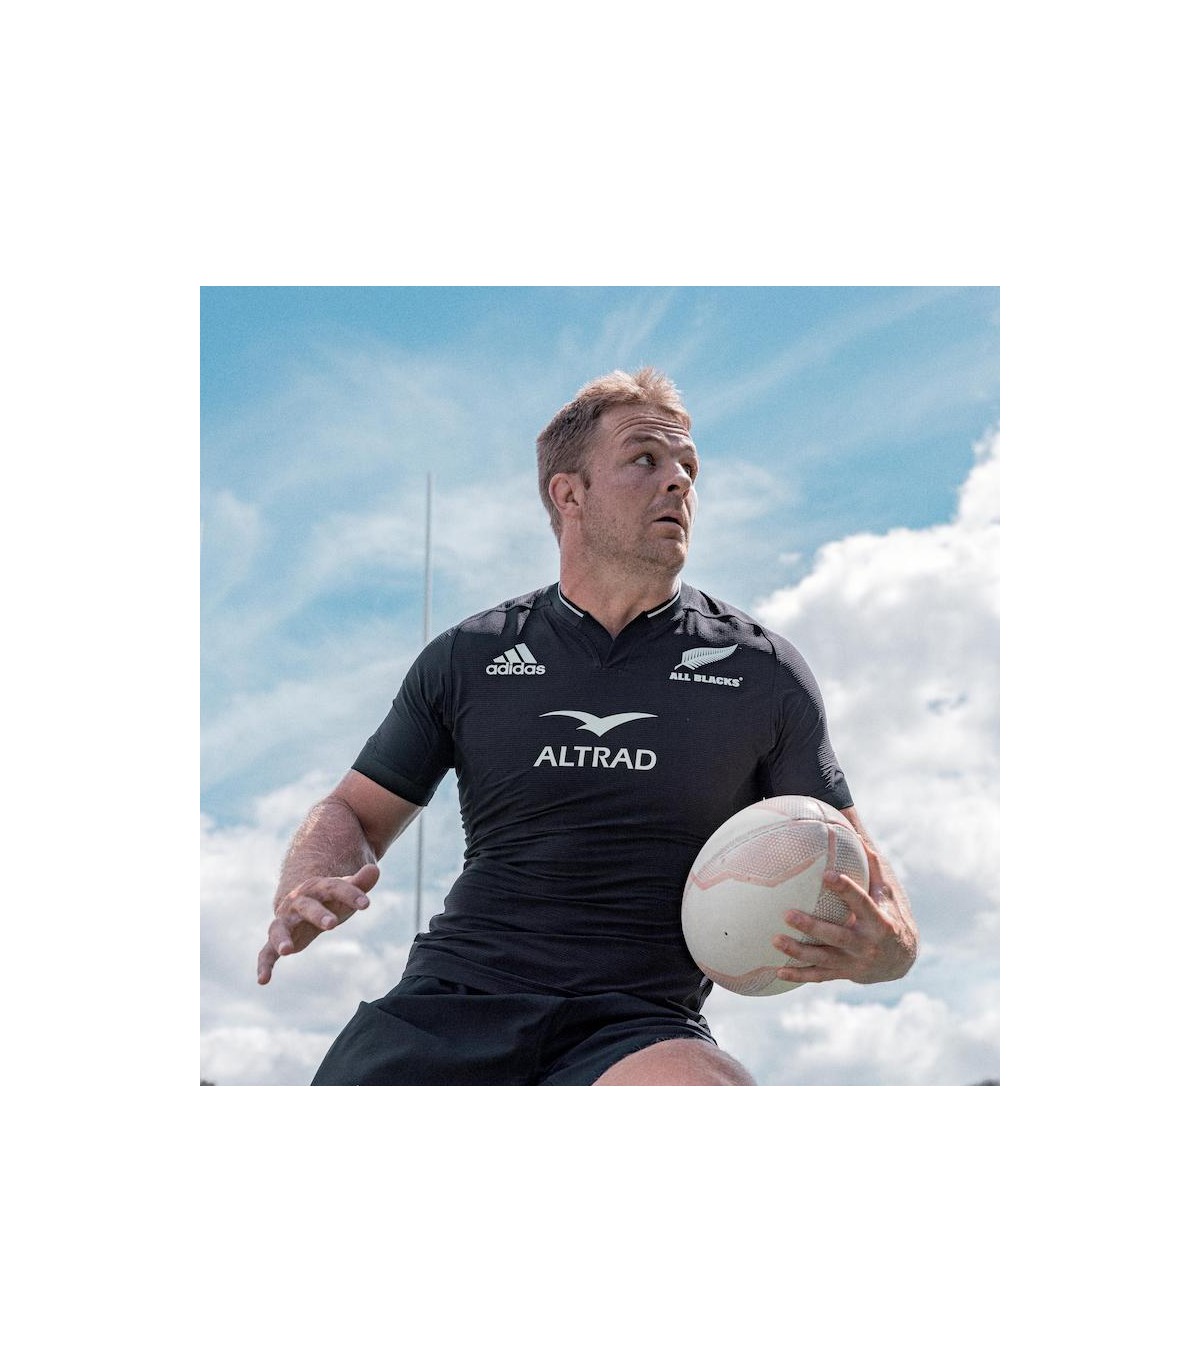 Casque de Rugby Replica All Blacks Officiel: Achetez En ligne en Promo